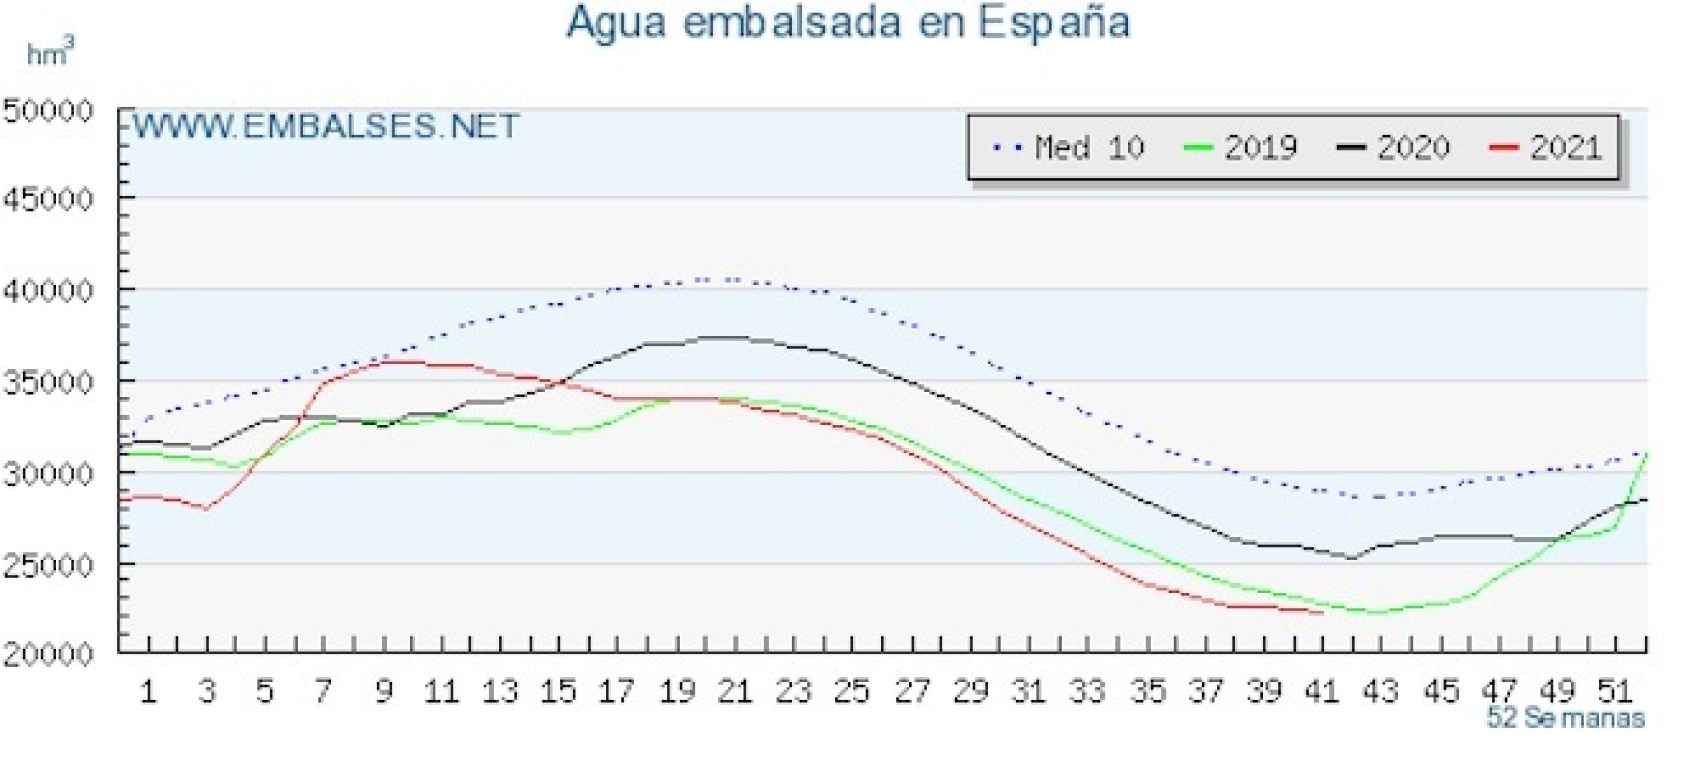 Comparativa agua embalsada en España desde 2018